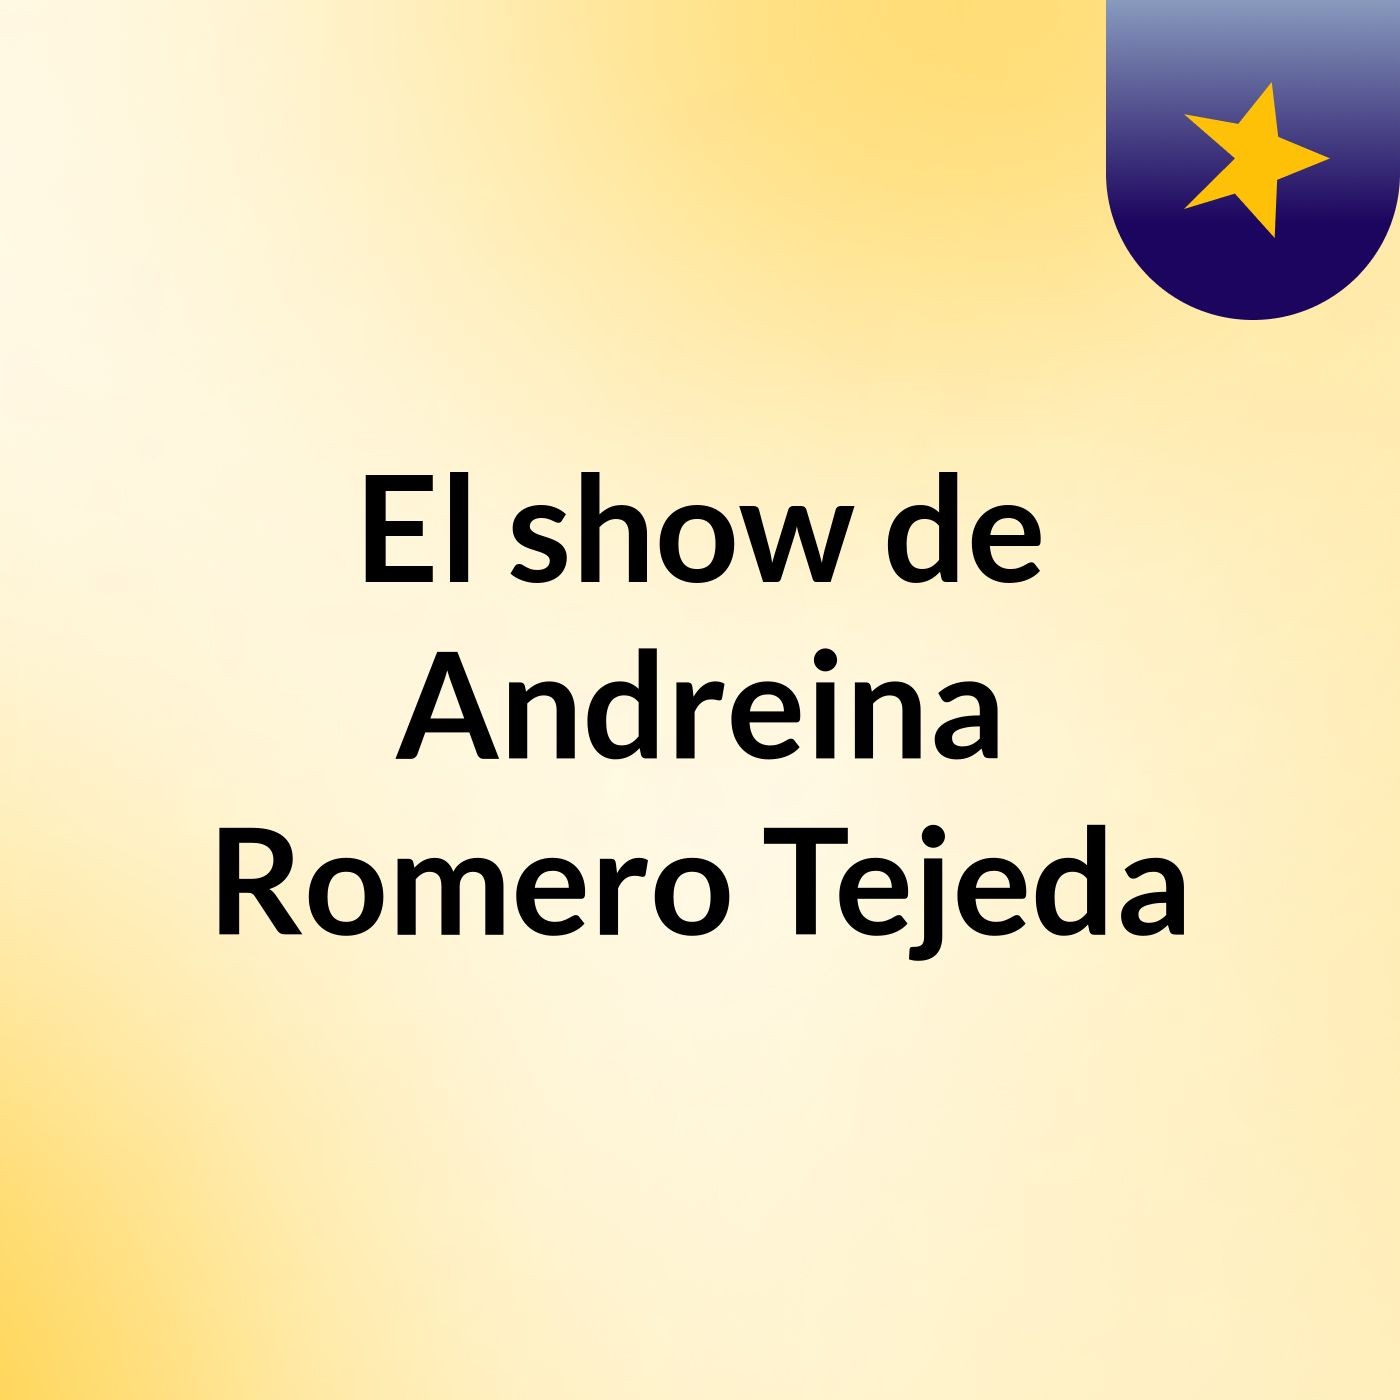 El show de Andreina Romero Tejeda